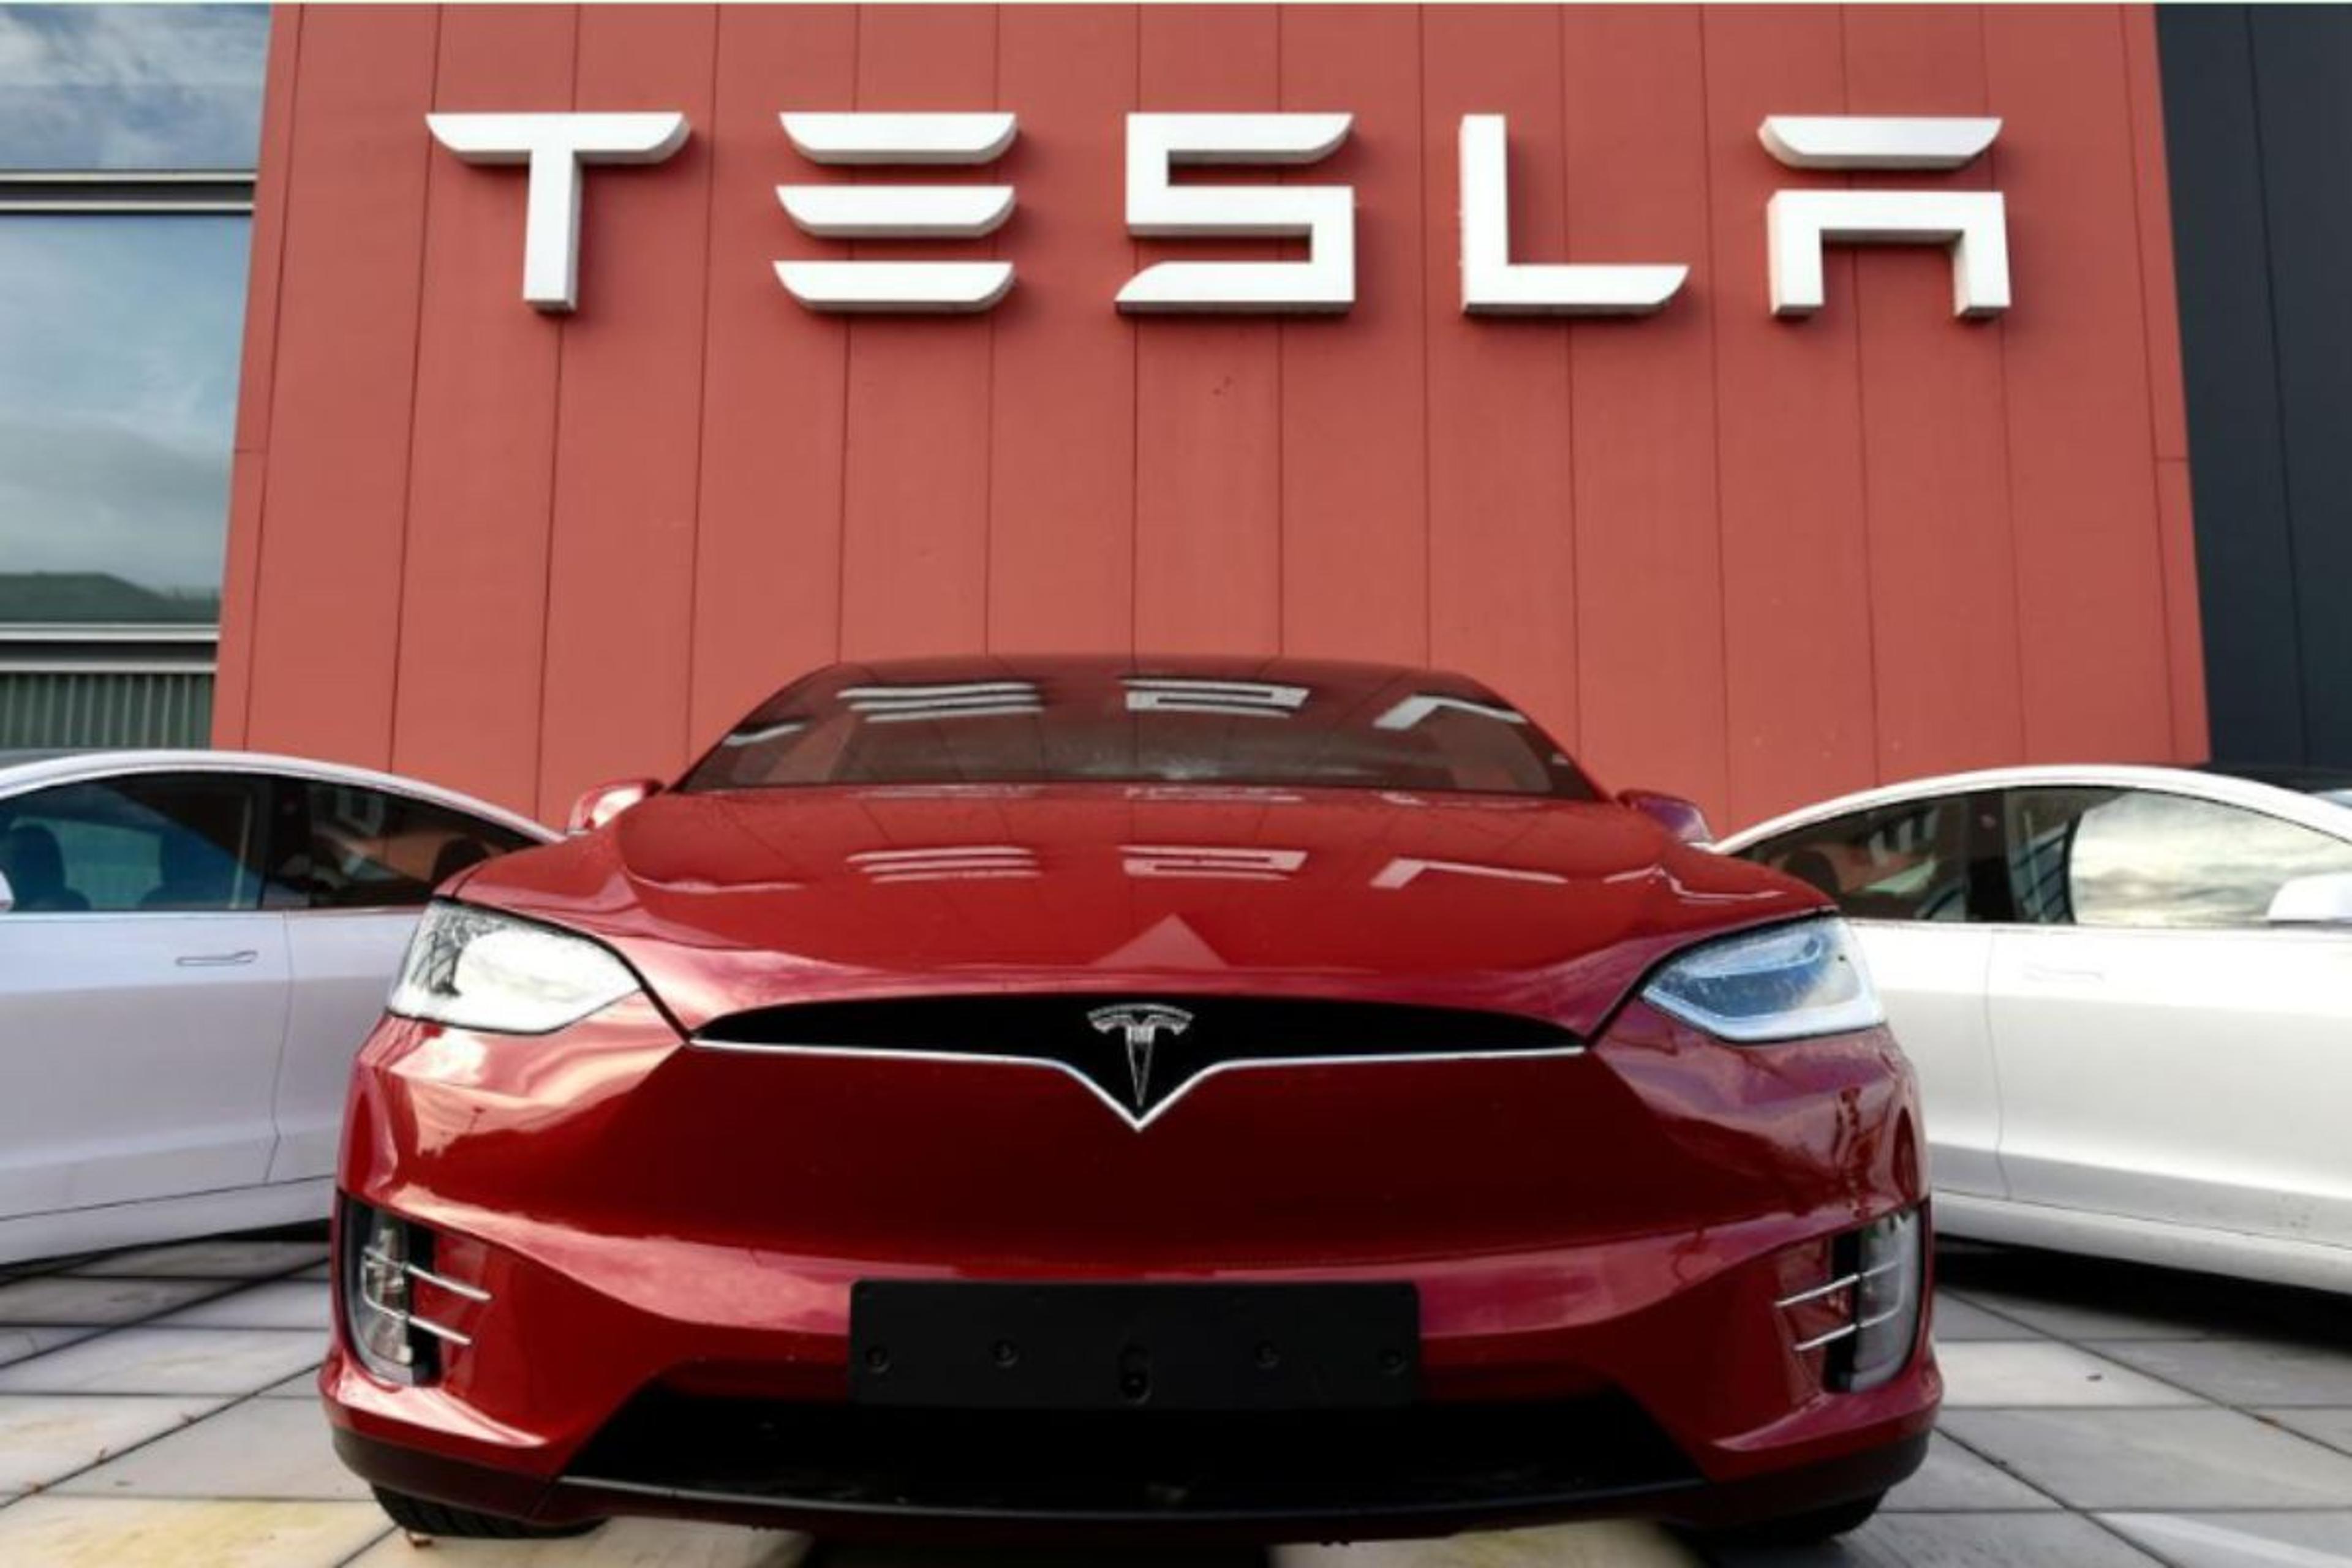 Tesla EV : इलेक्ट्रिक कार यूनिट के लिए राजस्थान बेहतर, टेस्ला को फिर बुला रही
सरकार